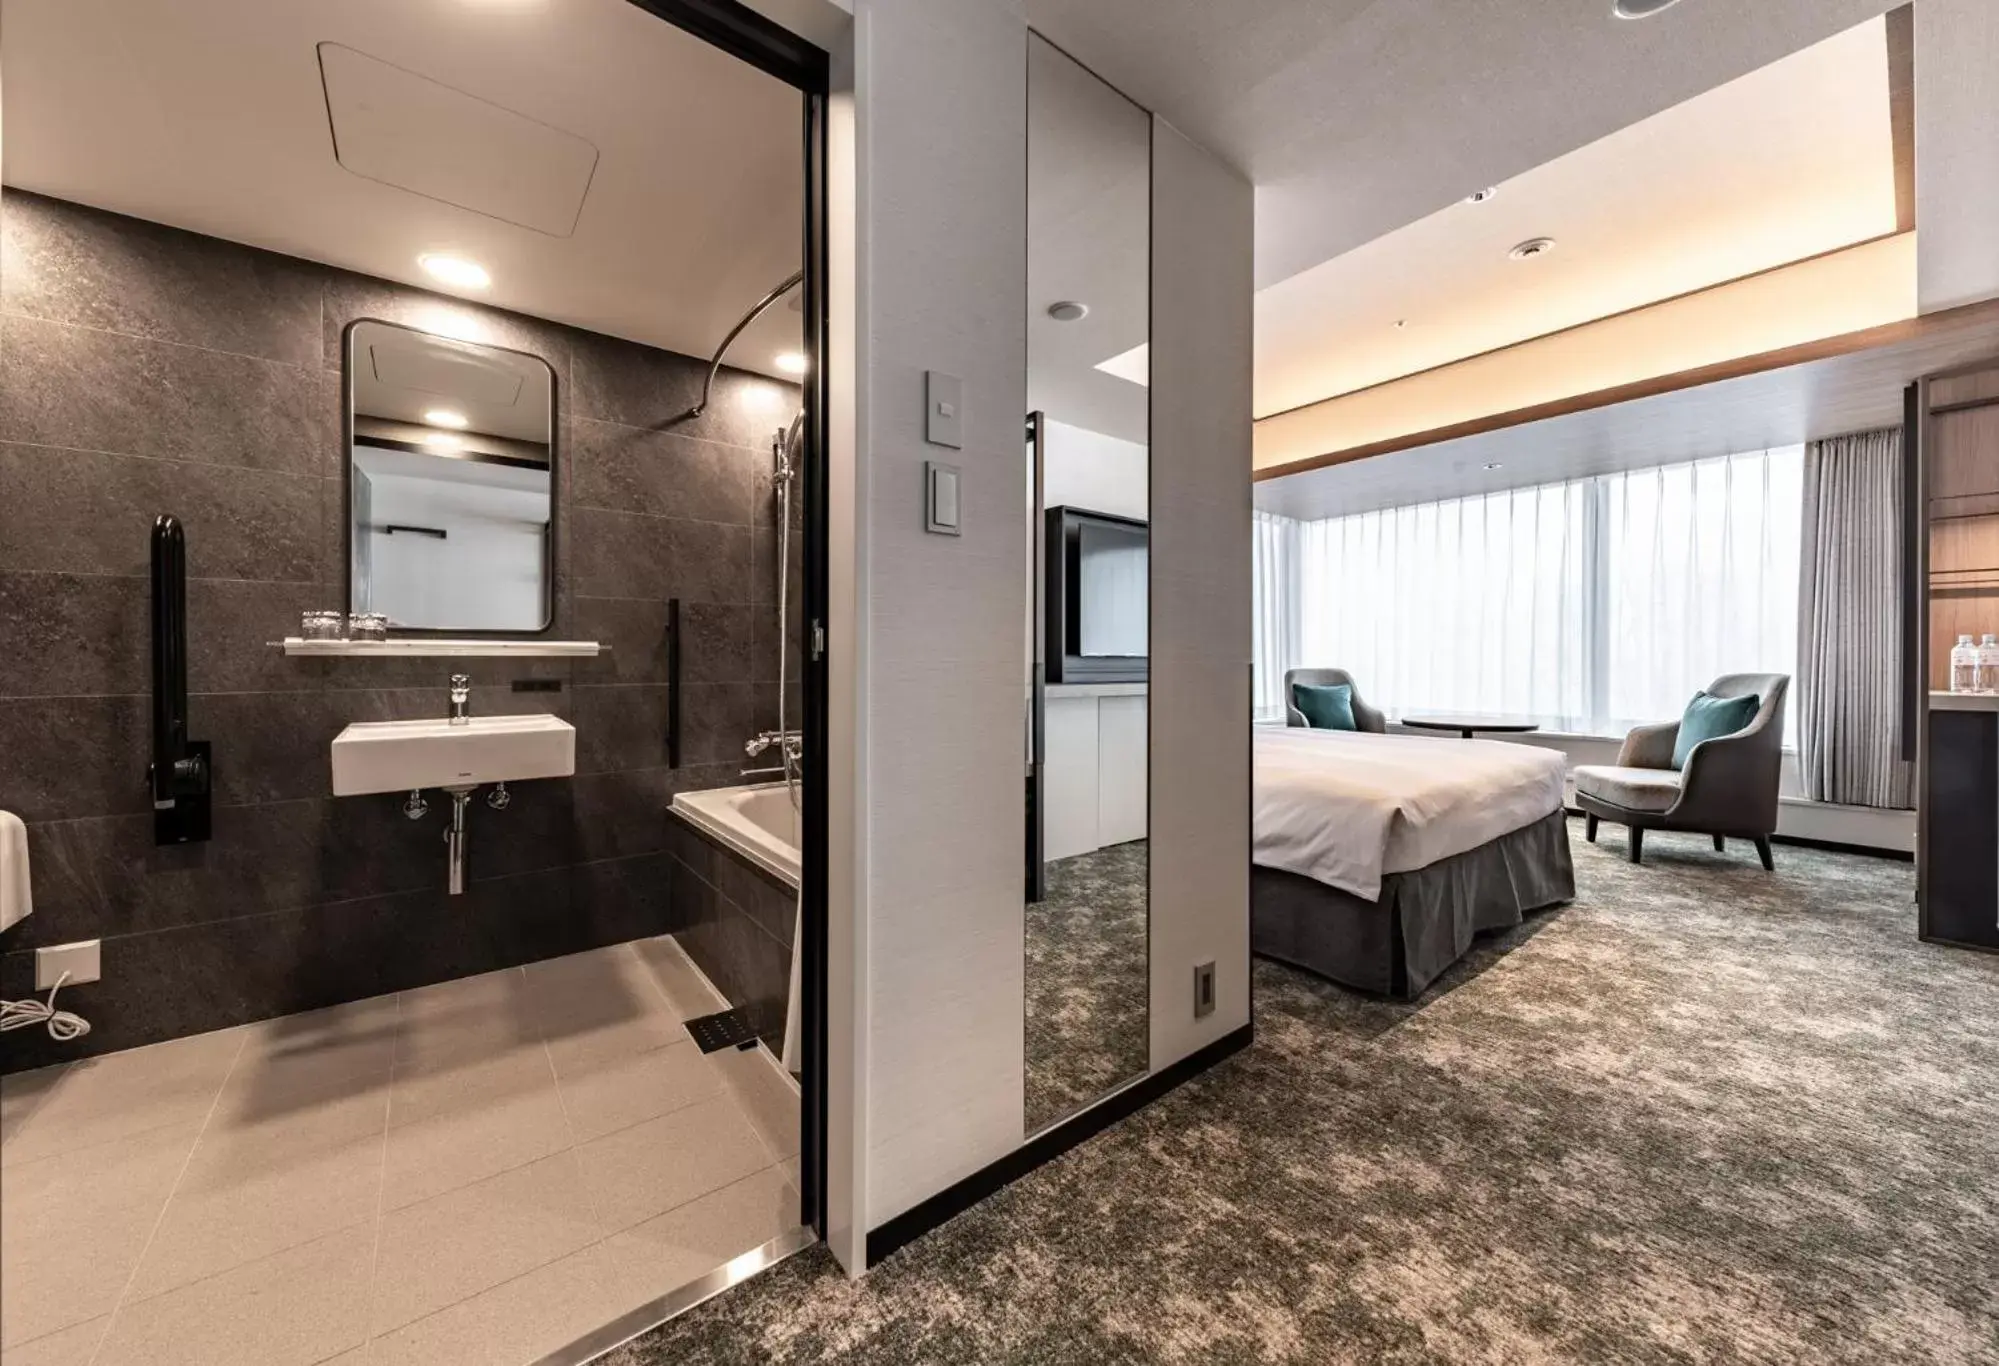 Photo of the whole room, Bathroom in Solaria Nishitetsu Hotel Sapporo